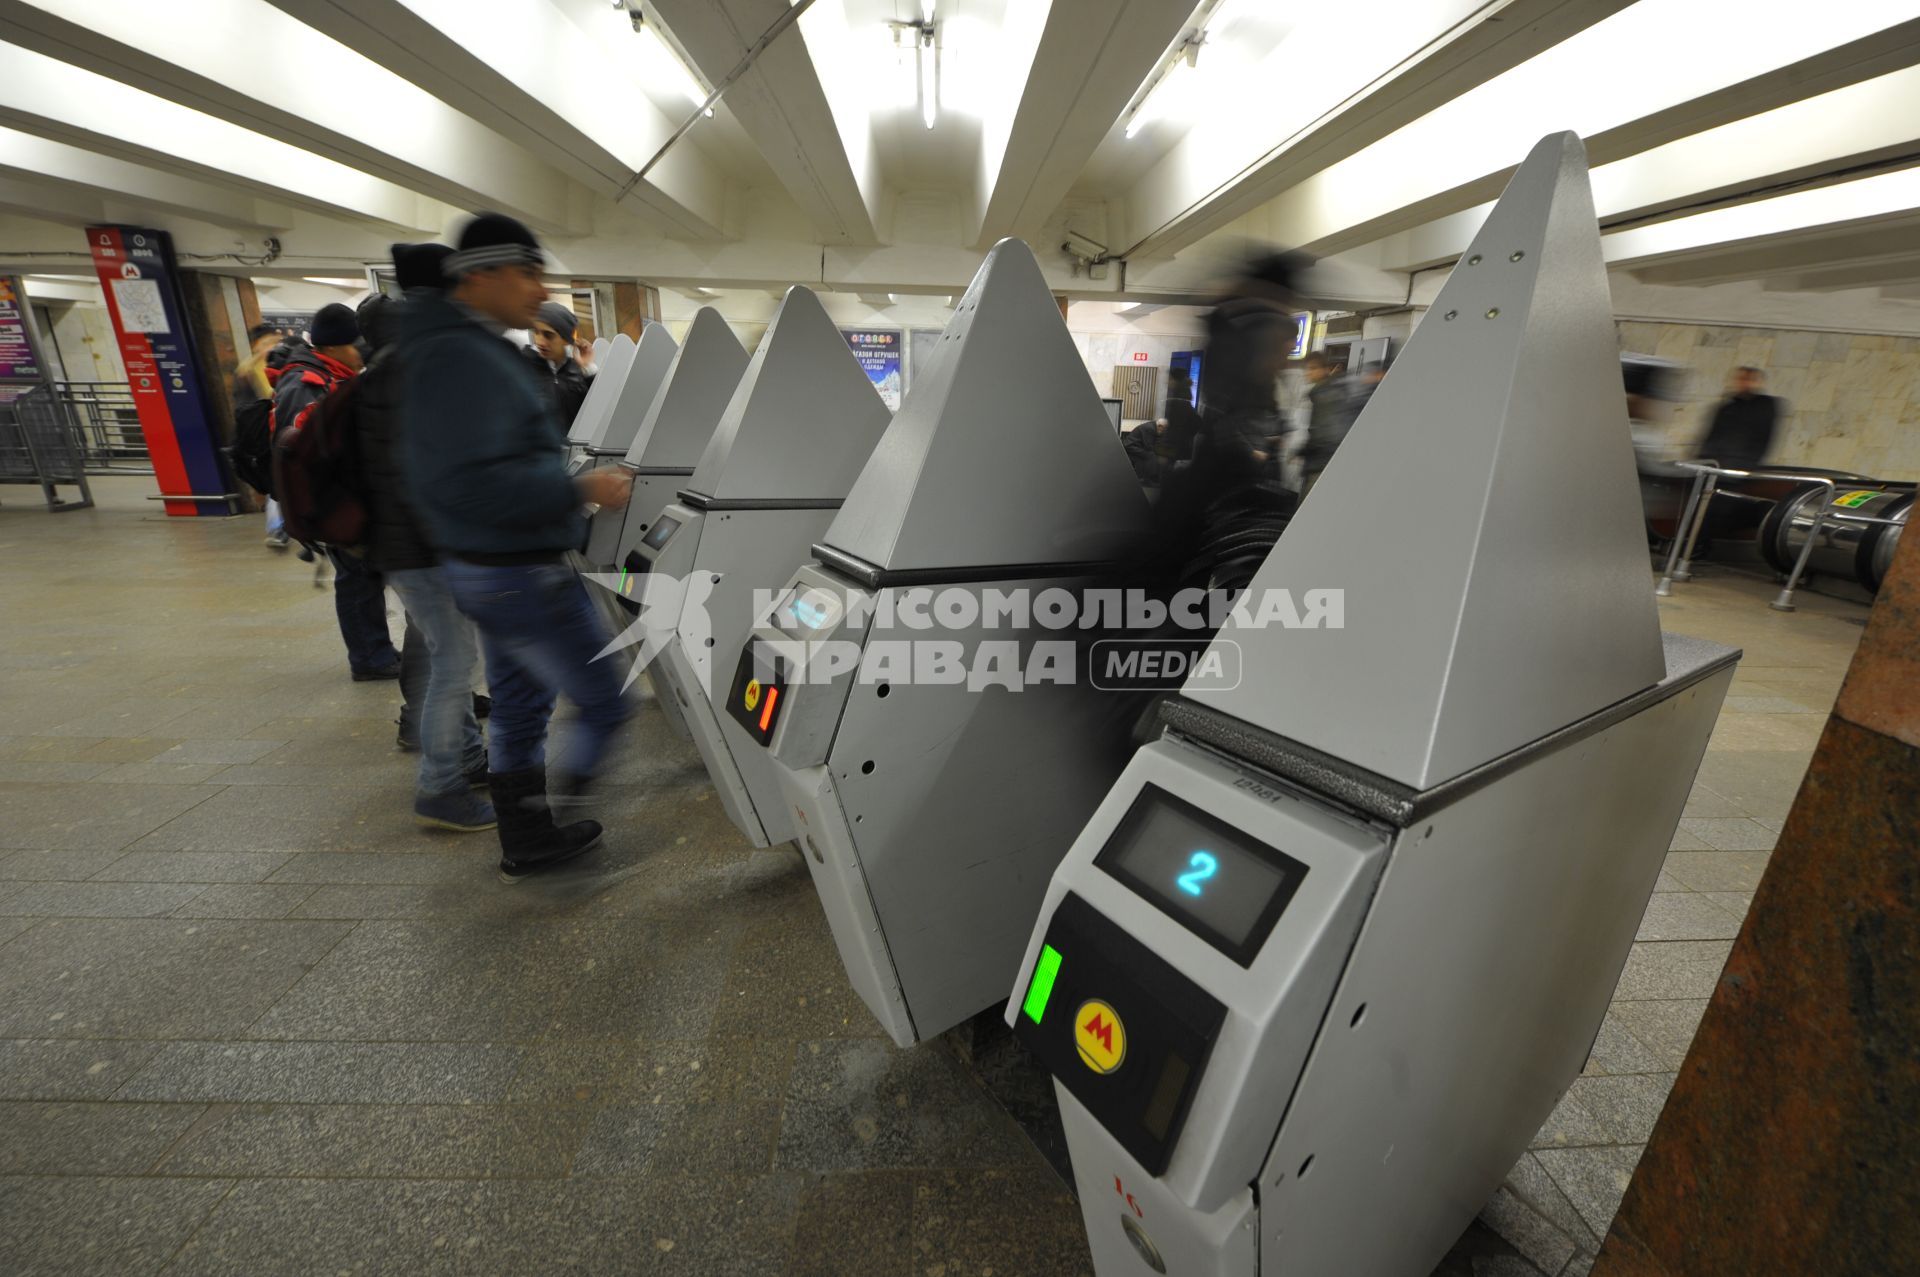 На станции метро ЦАРИЦЫНО на верхней крышке каждого турникета появились металлические конструкции, которые мешают безбилетникам  перепрыгивать через турникет. 09 декабря 2011 года.